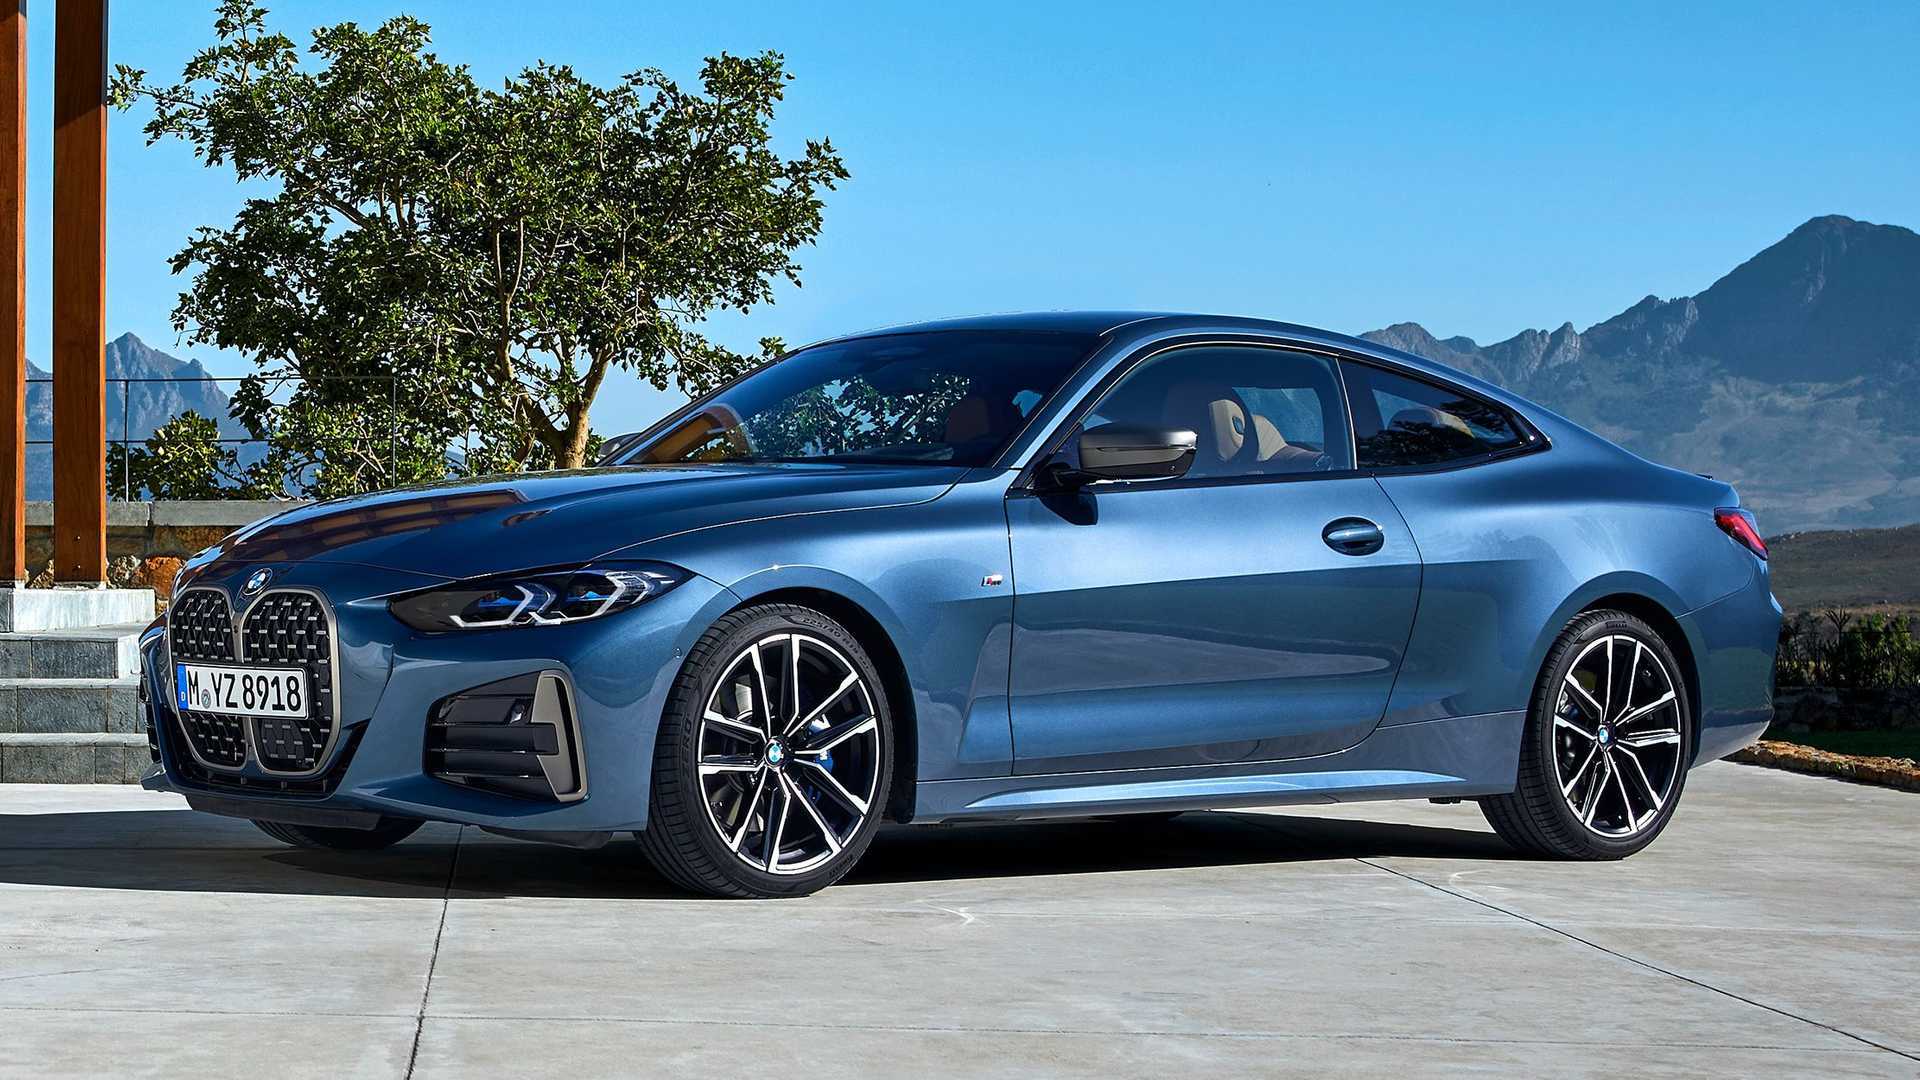 BMW 4 Series News and Reviews | Motor1.com